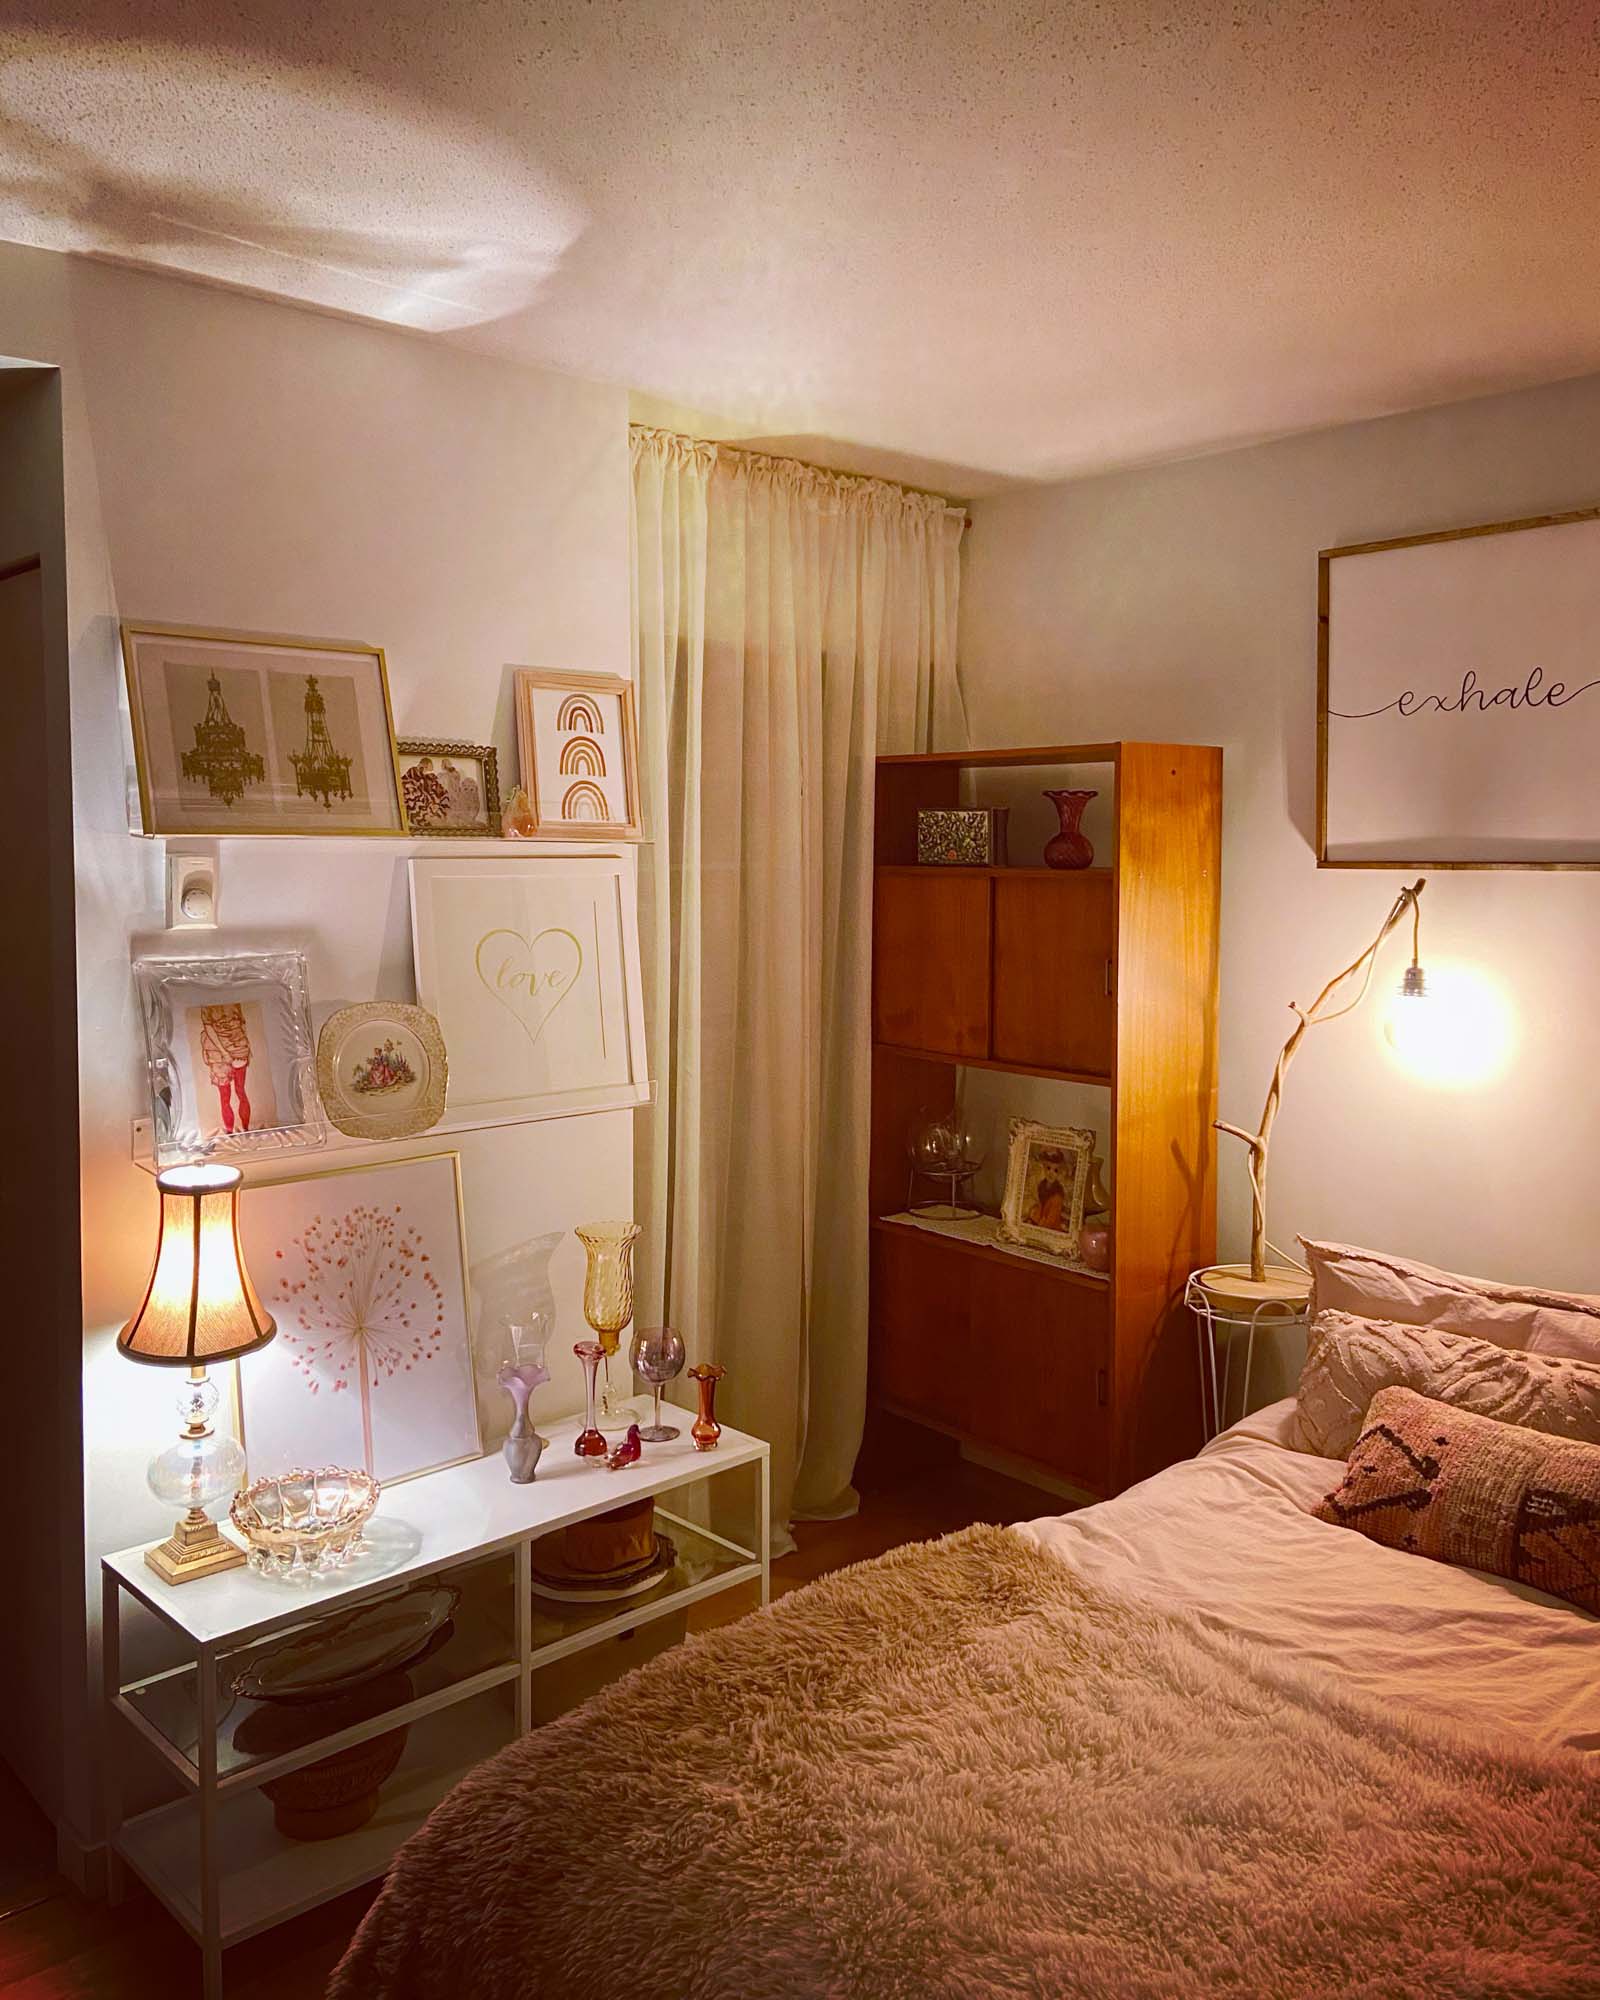 寝室には友人から譲り受けたチーク材の棚。流木のランプはフランス人アーティストのトーマスさんのもの。壁にかけられた Inhale Exhale（吸う / 吐く）のウォールアートはカナダのカリグラファーによる手書きのハンドメイド。